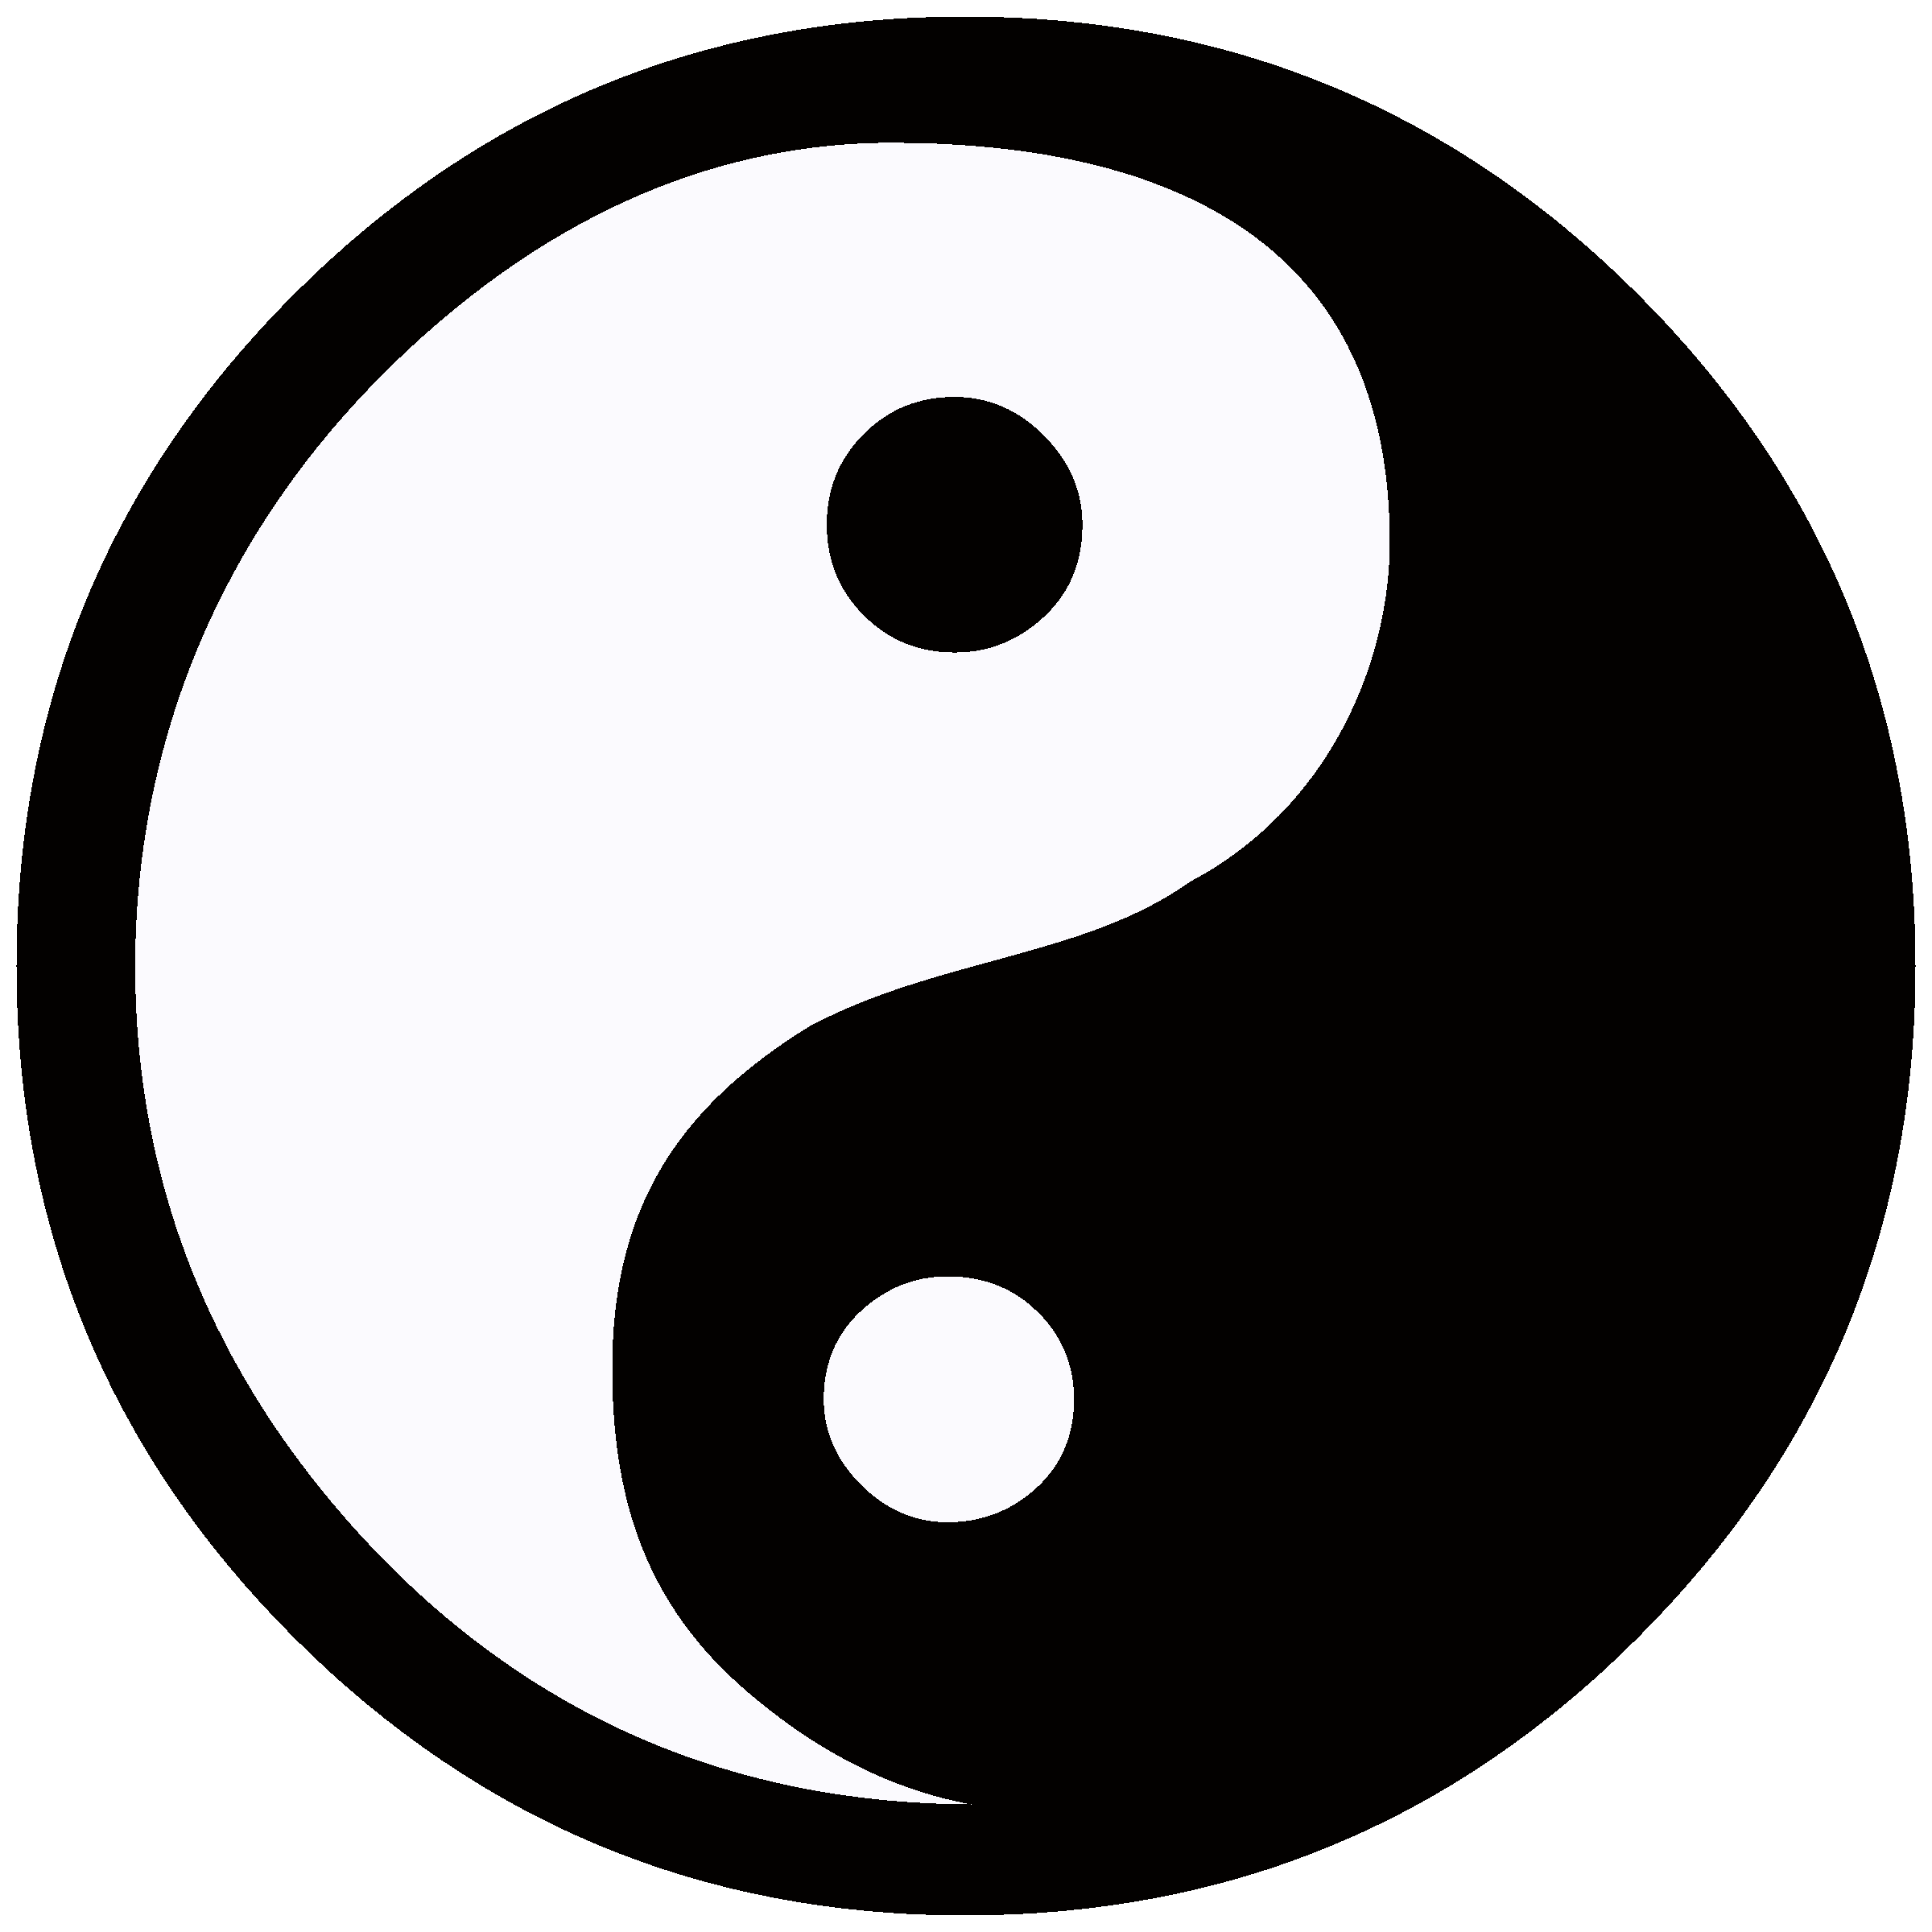 yin and yang symbol text